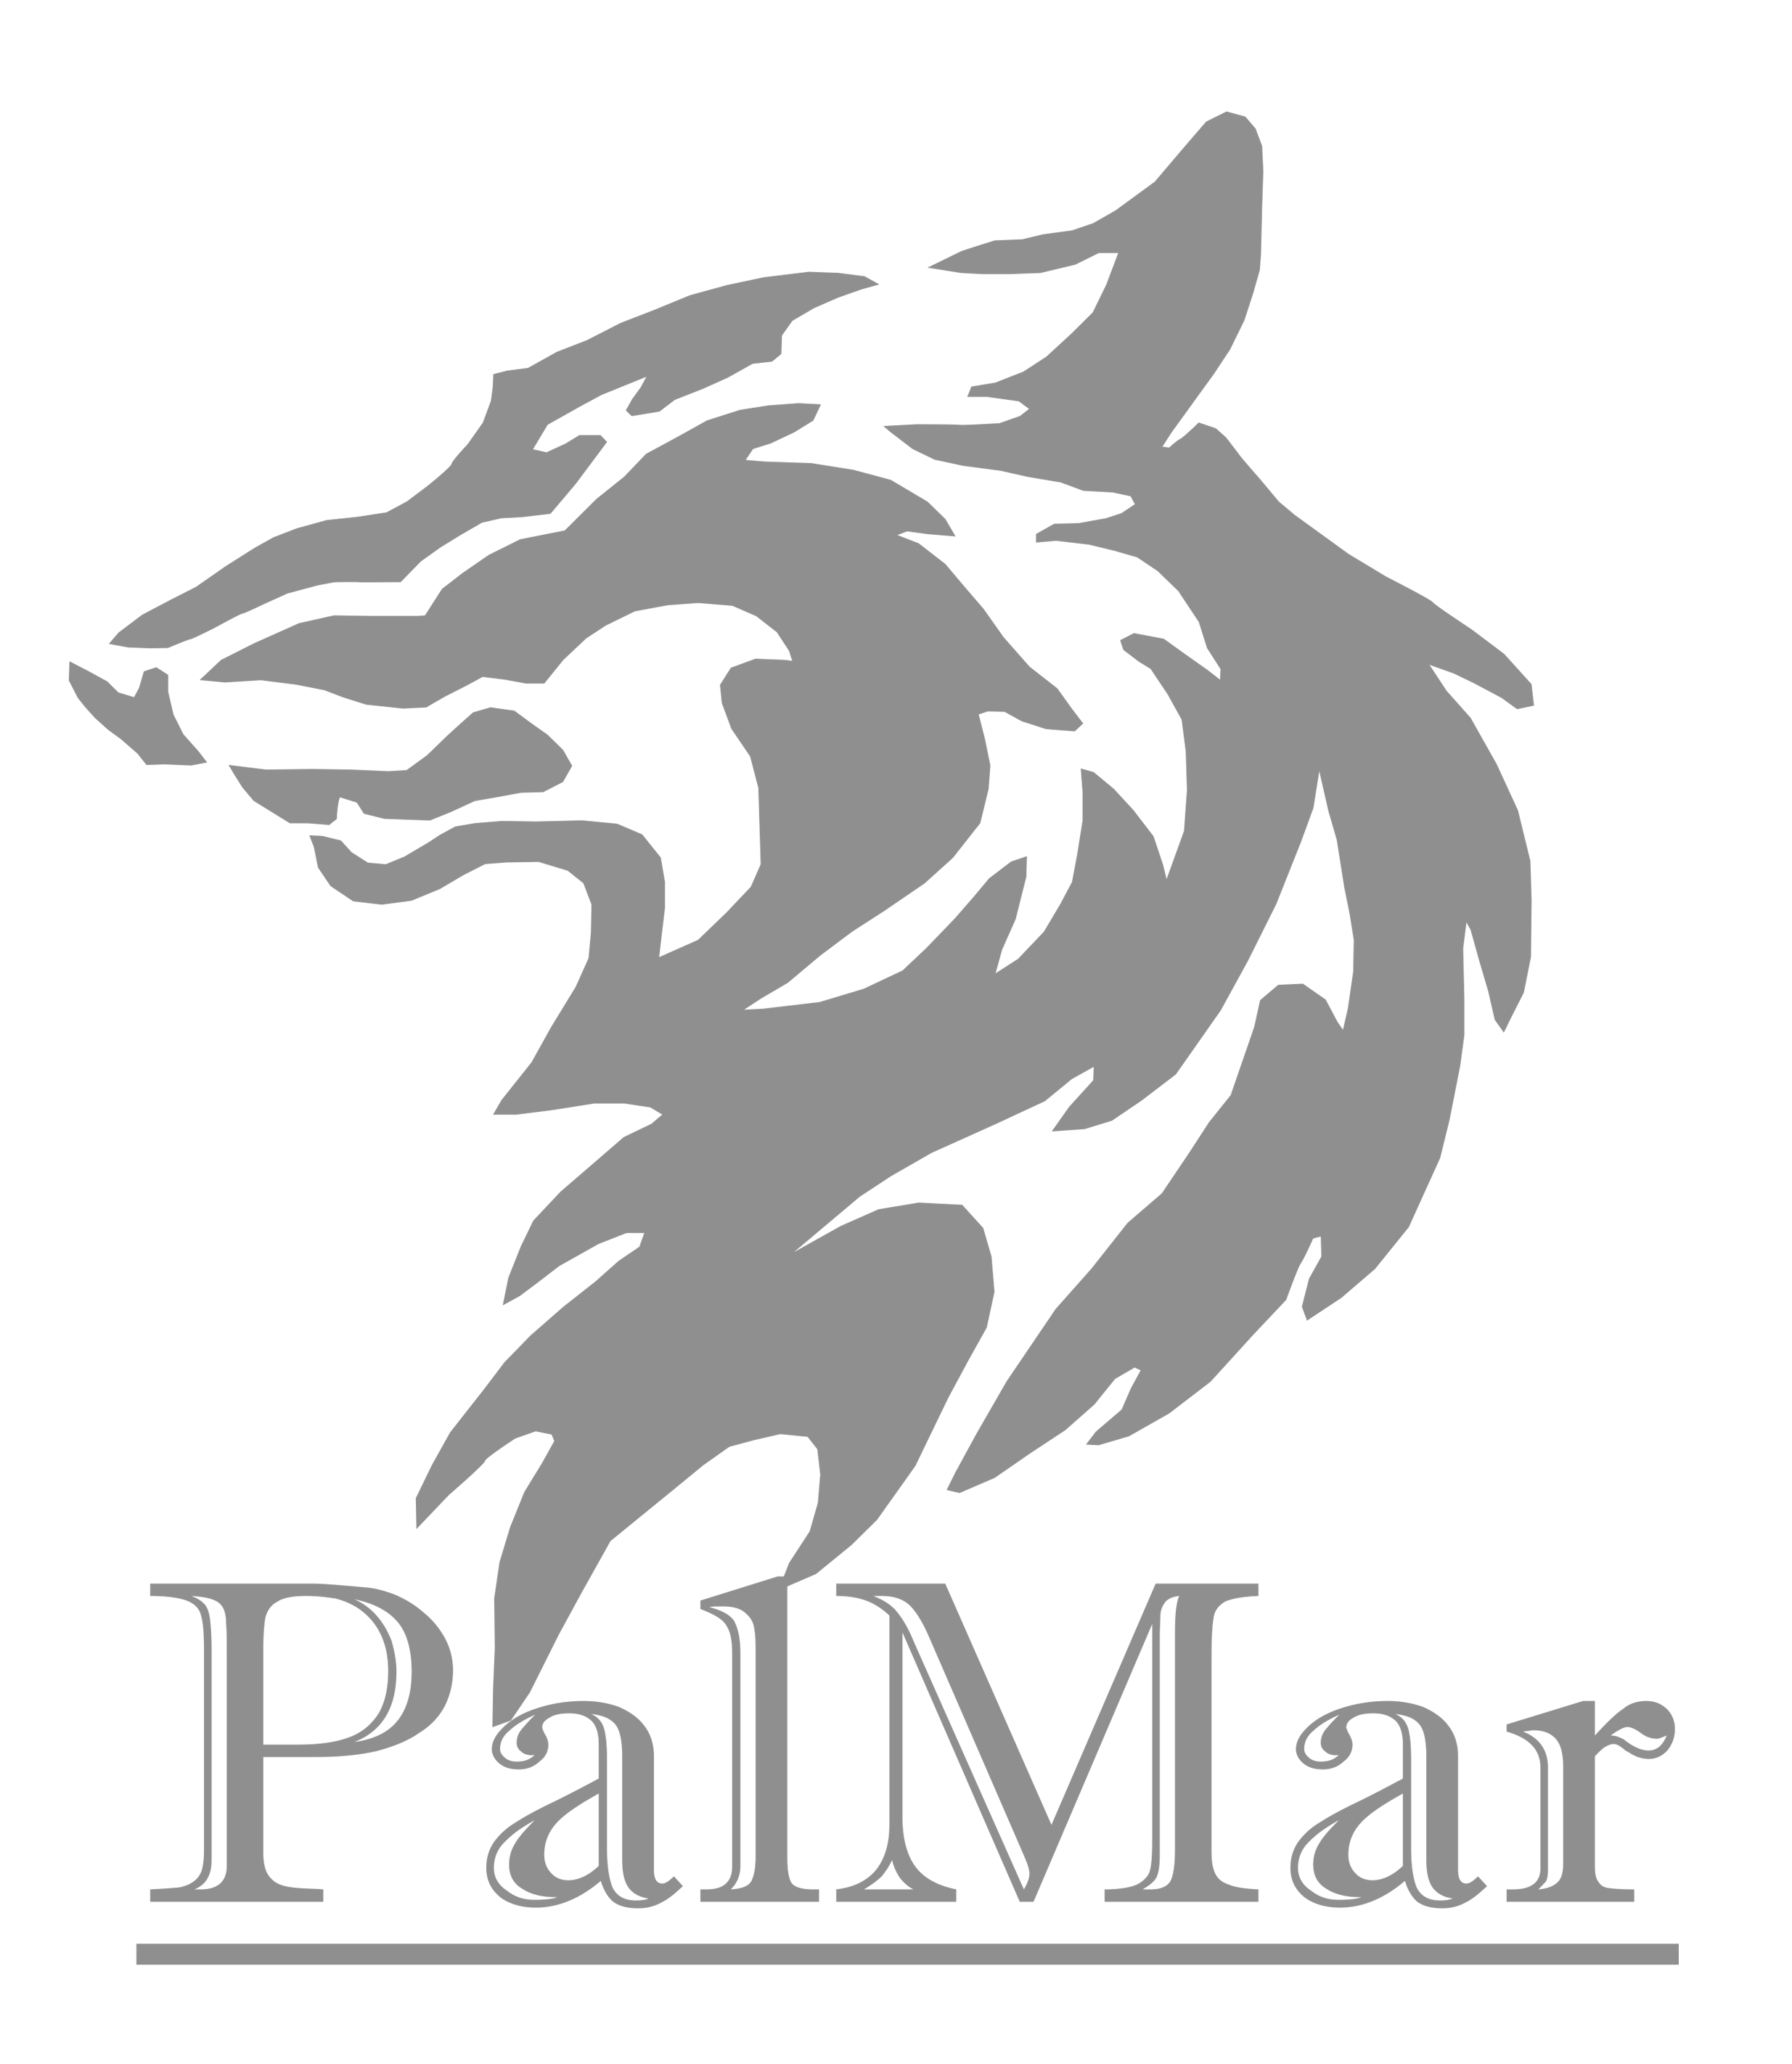 PalMar